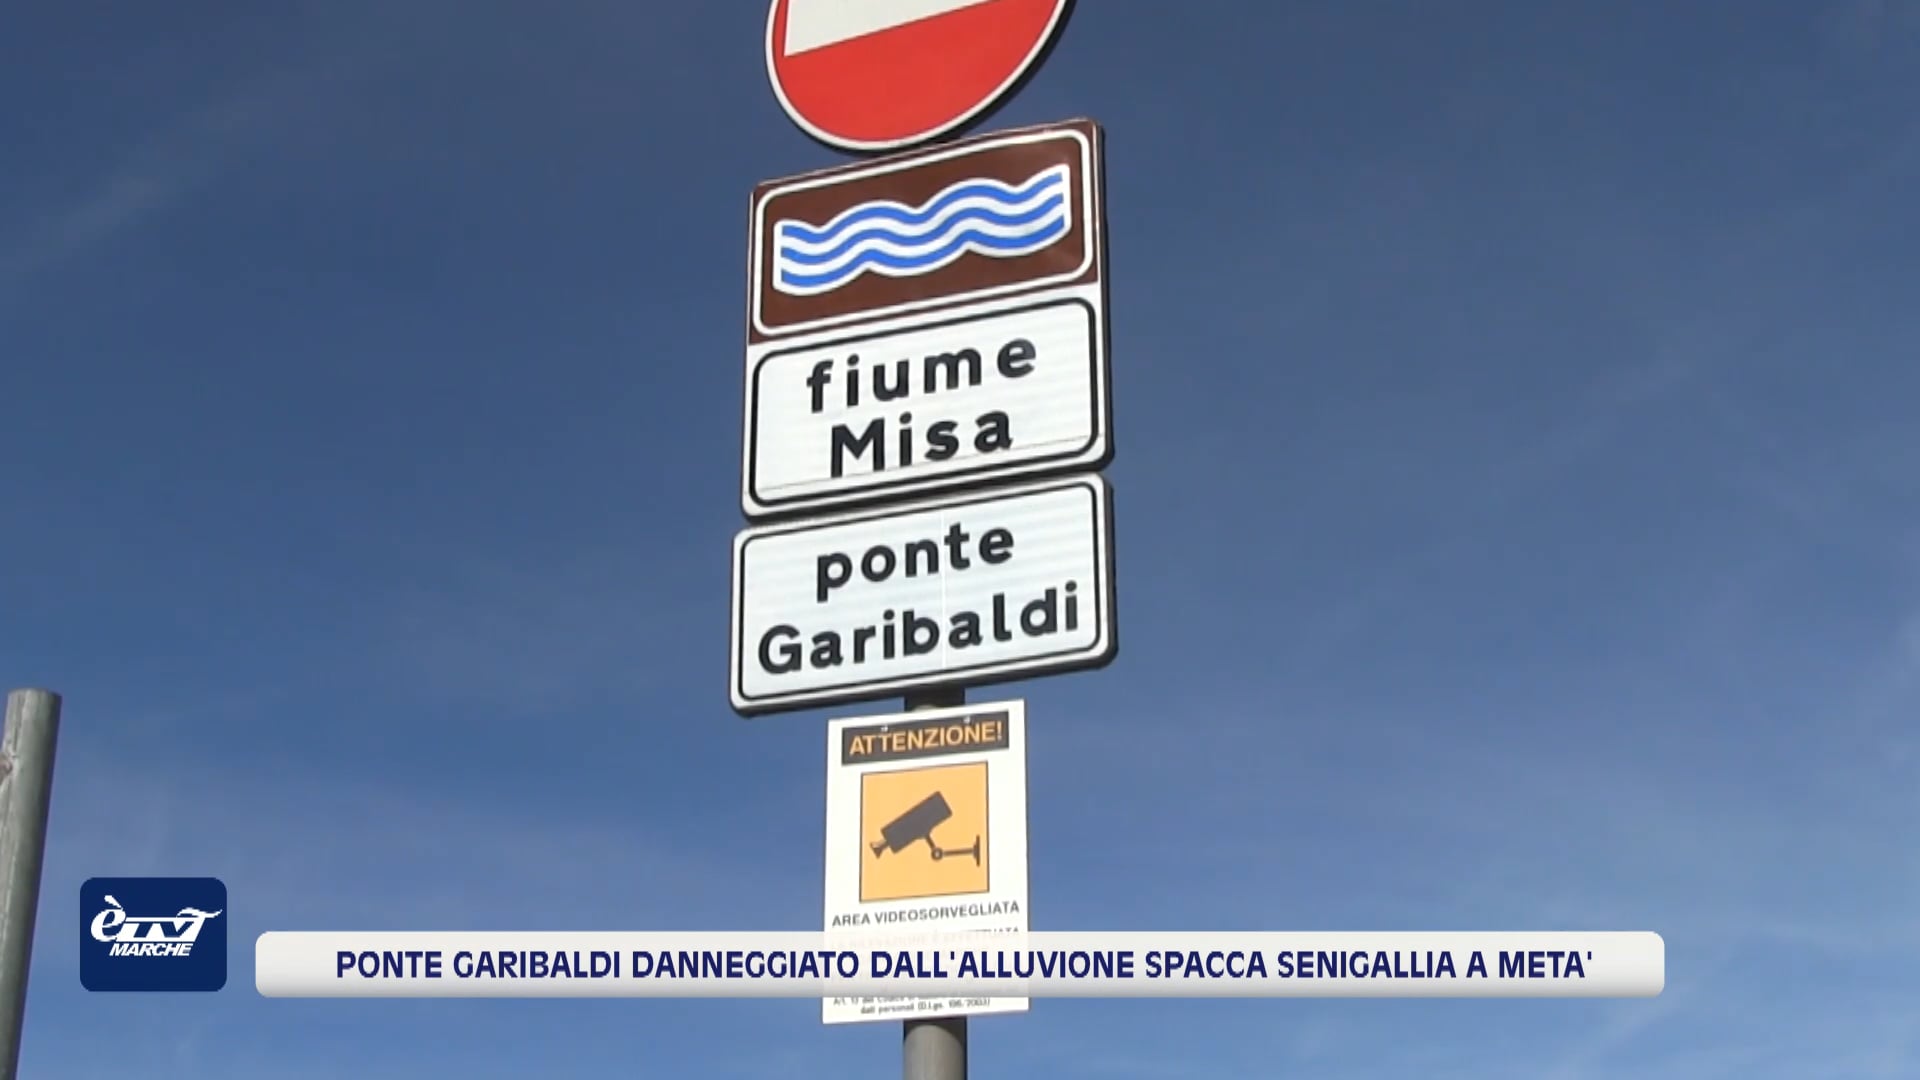  Post alluvione a Senigallia: “cercasi ponte” - VIDEO